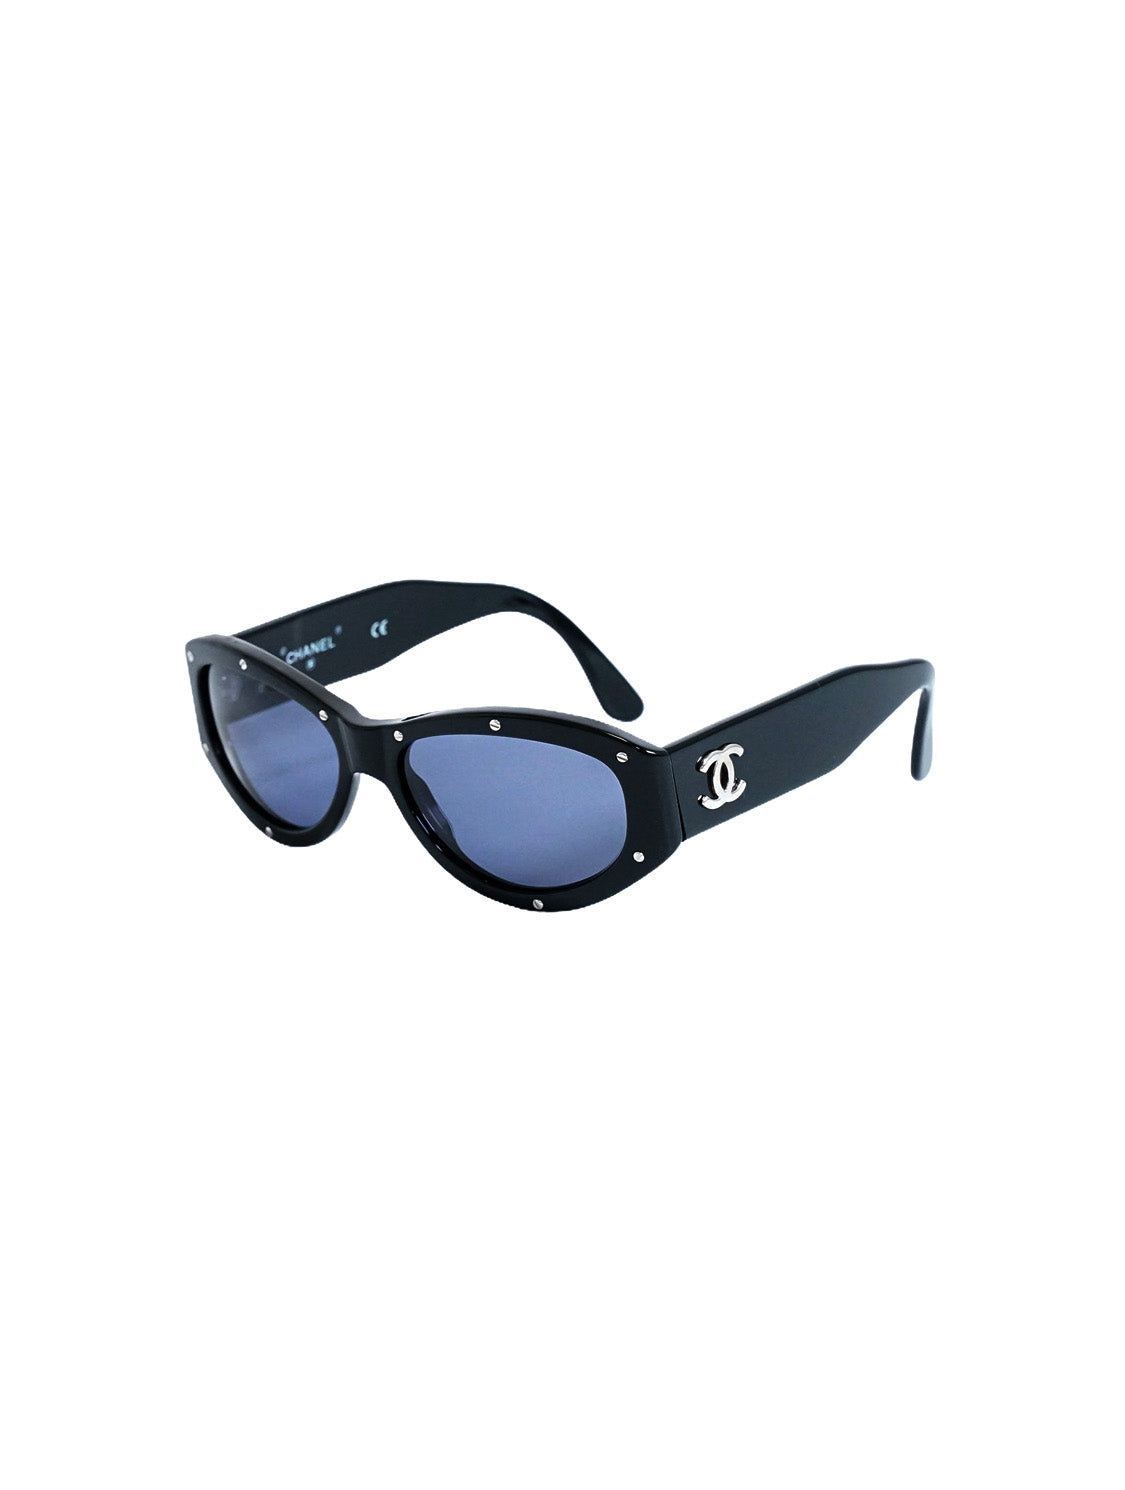 Chanel 2010s Black Logo Sunglasses · INTO